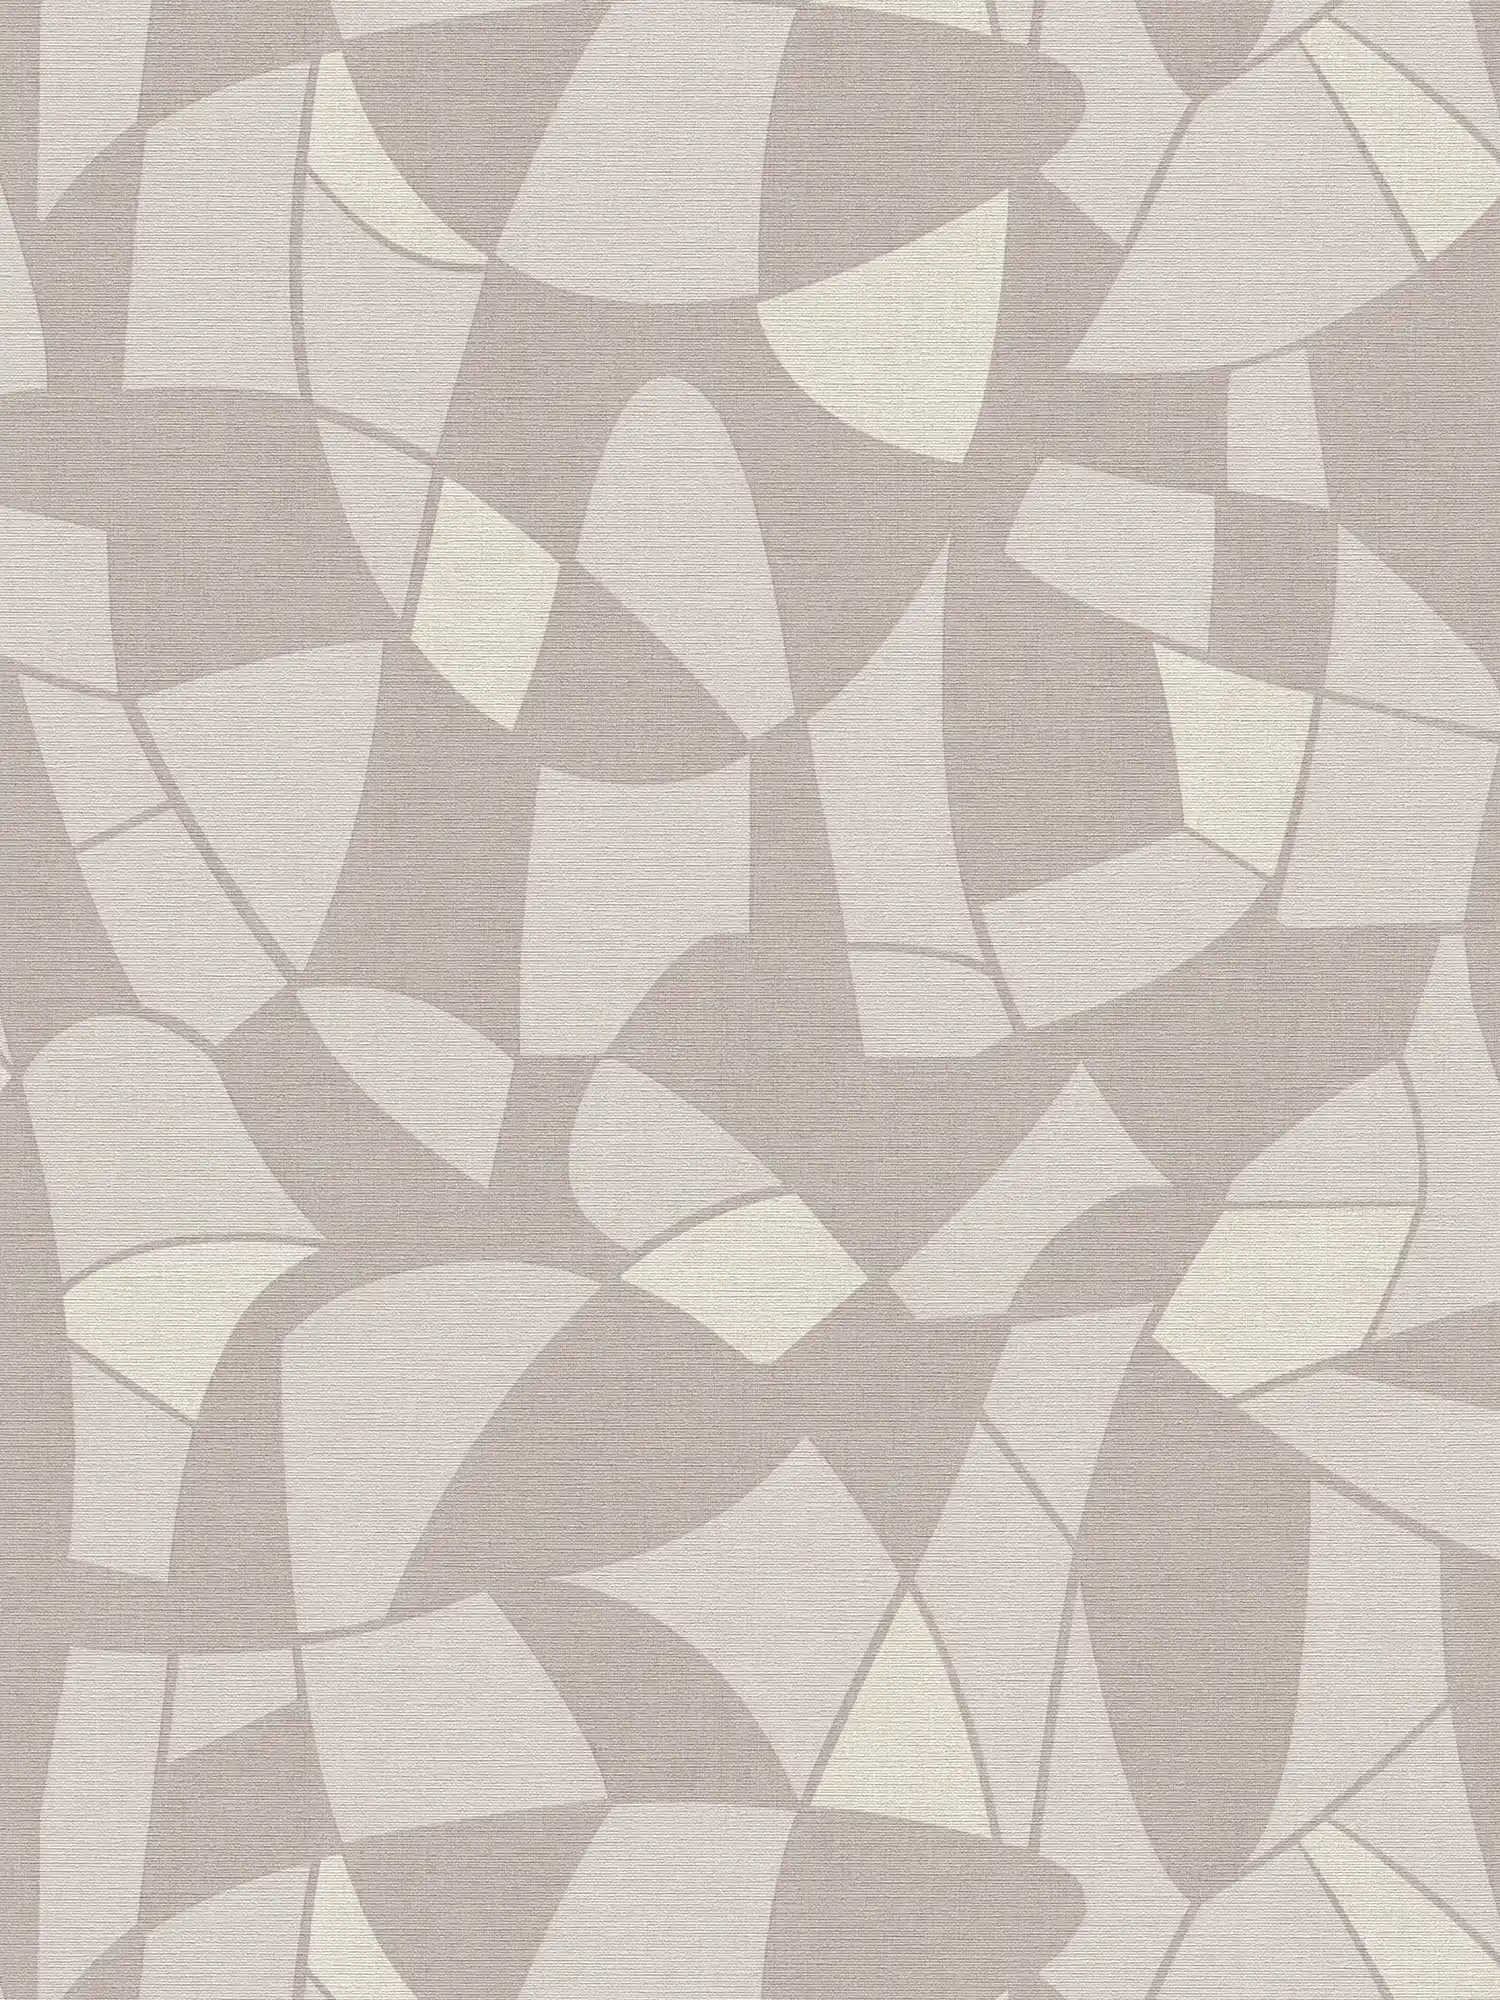         Vliesbehang in subtiele kleuren in een abstract patroon - grijs, crème
    